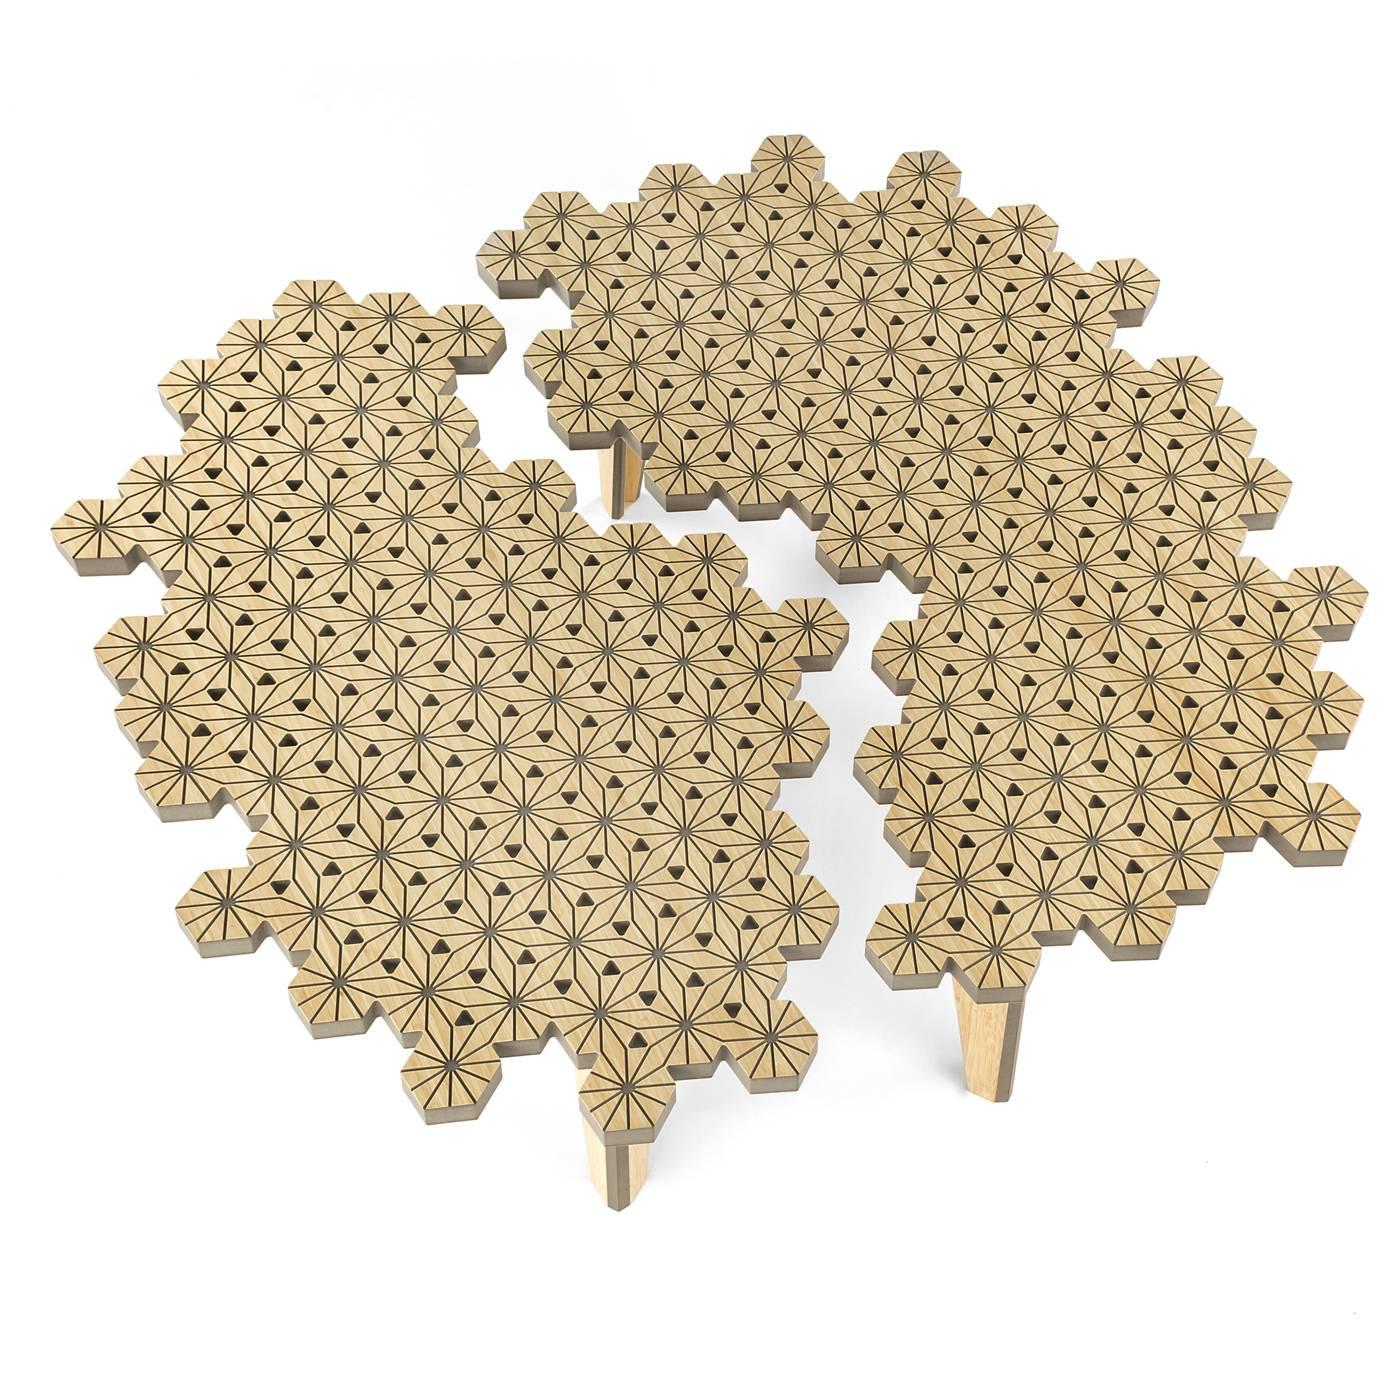 Cette table basse étonnante conçue par Shinobu Ito est en fibre de bois colorée dans une teinte gris clair avec un placage en bois de bambou. Il se compose de deux éléments qui s'imbriquent parfaitement l'un dans l'autre. S'ils sont proches les uns